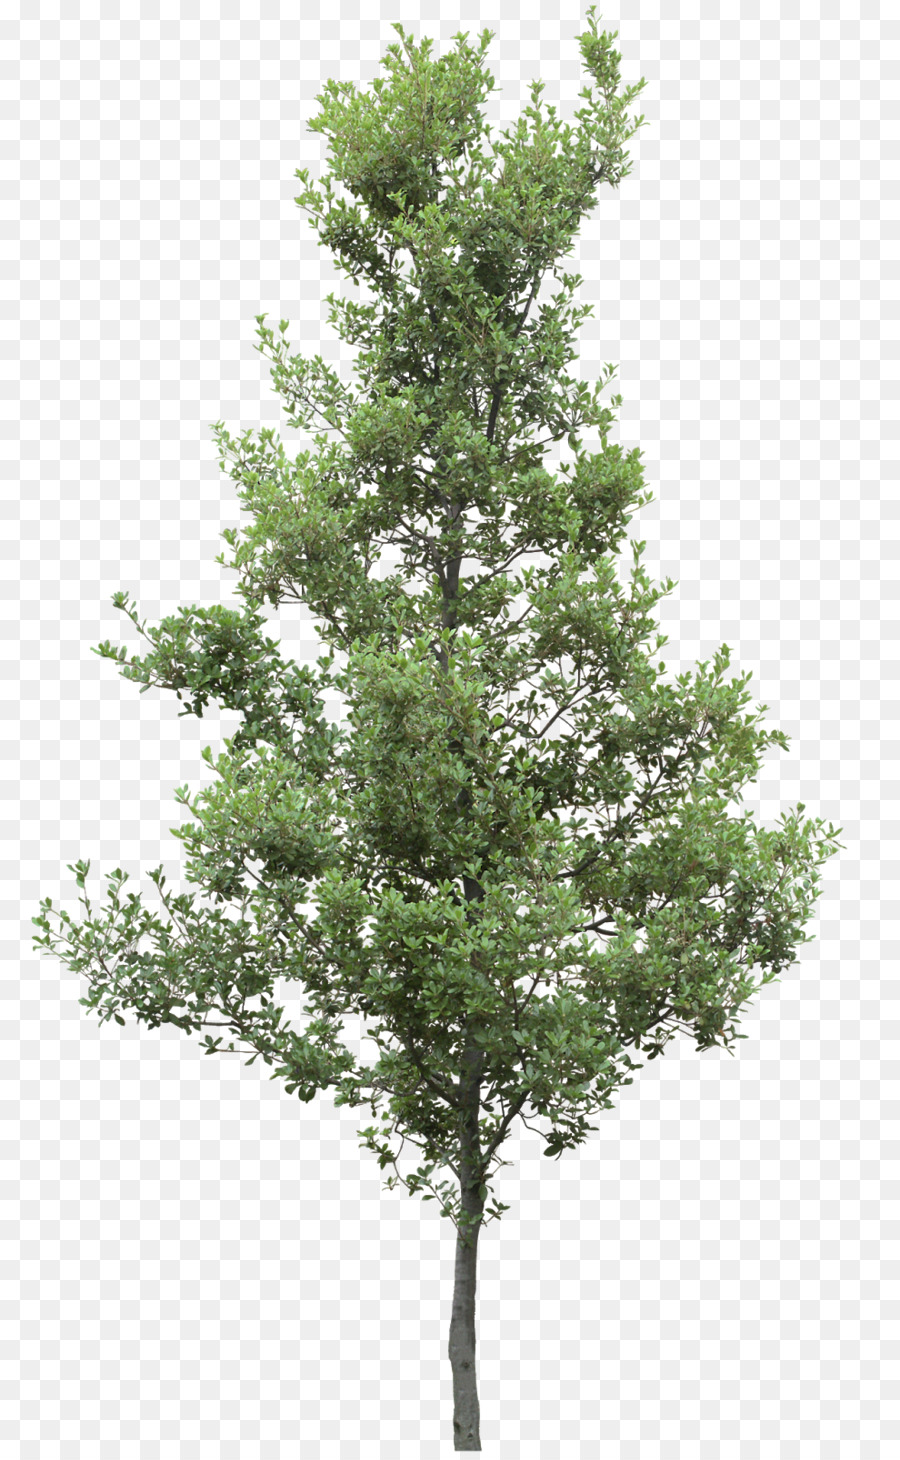 Immagine di grafica di rete portatile Psd Tree Tree - Hackberry PNG Hackberry Tree